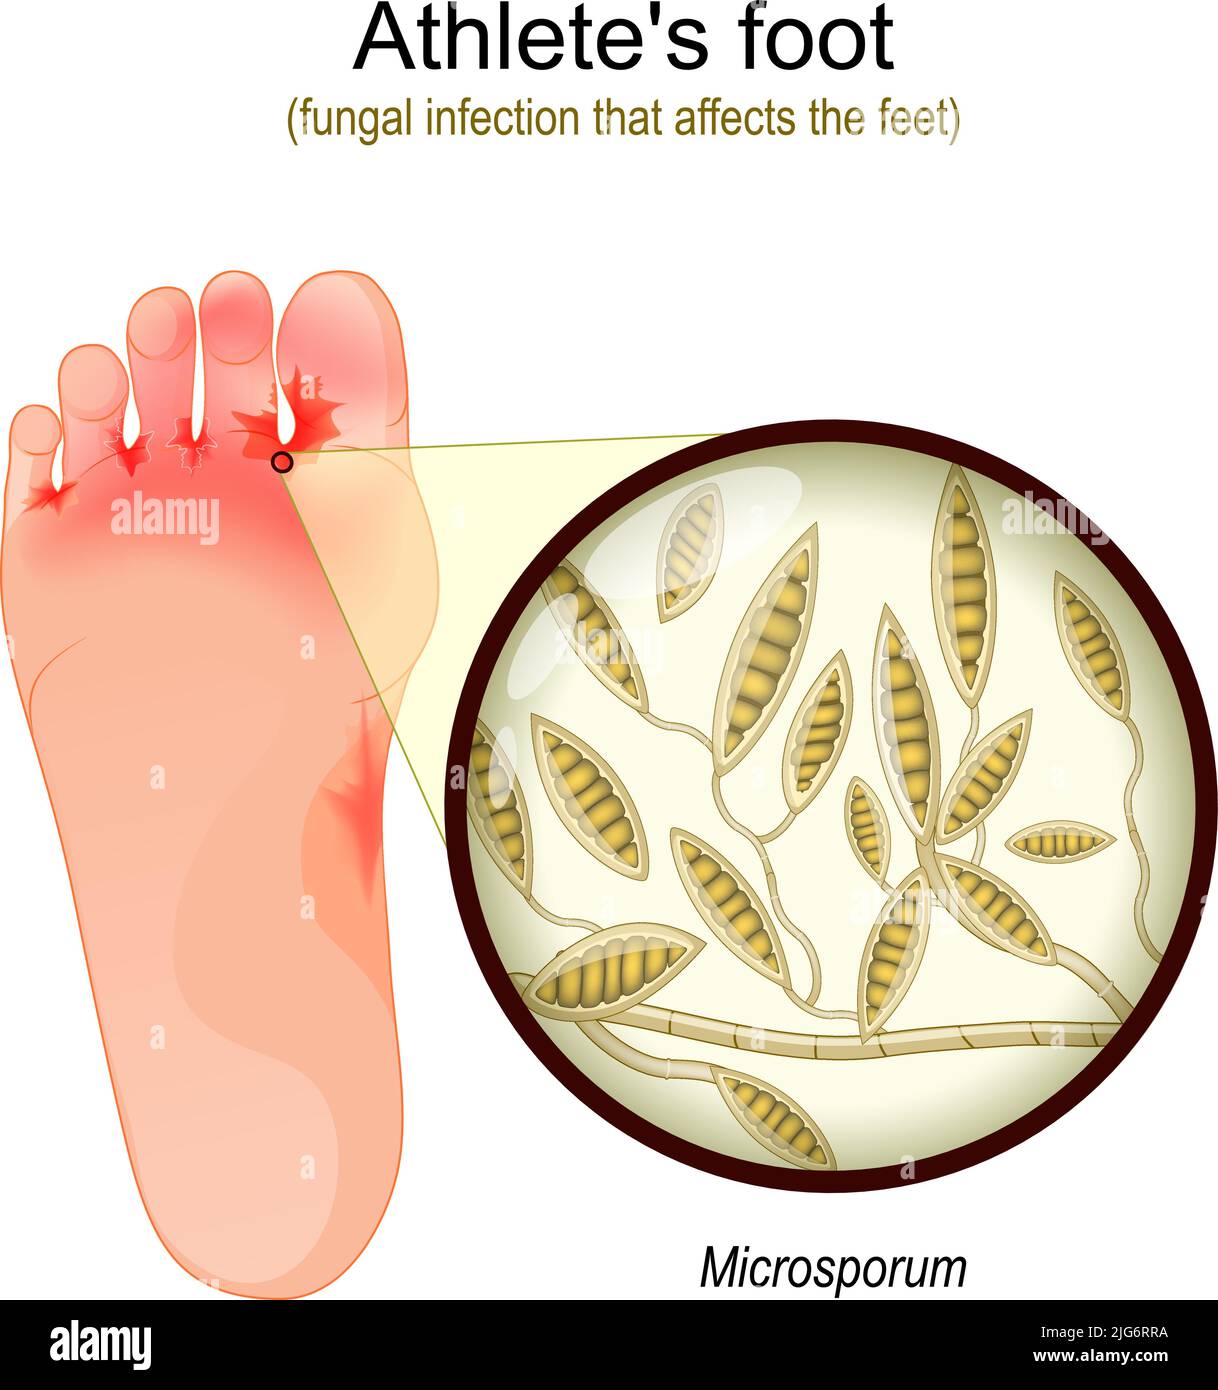 Piede dell'atleta. Infezione fungina che colpisce i piedi. Primo piano del lievito che causa la malattia di infezione della pelle. Microsporum. Illustrazione vettoriale Illustrazione Vettoriale